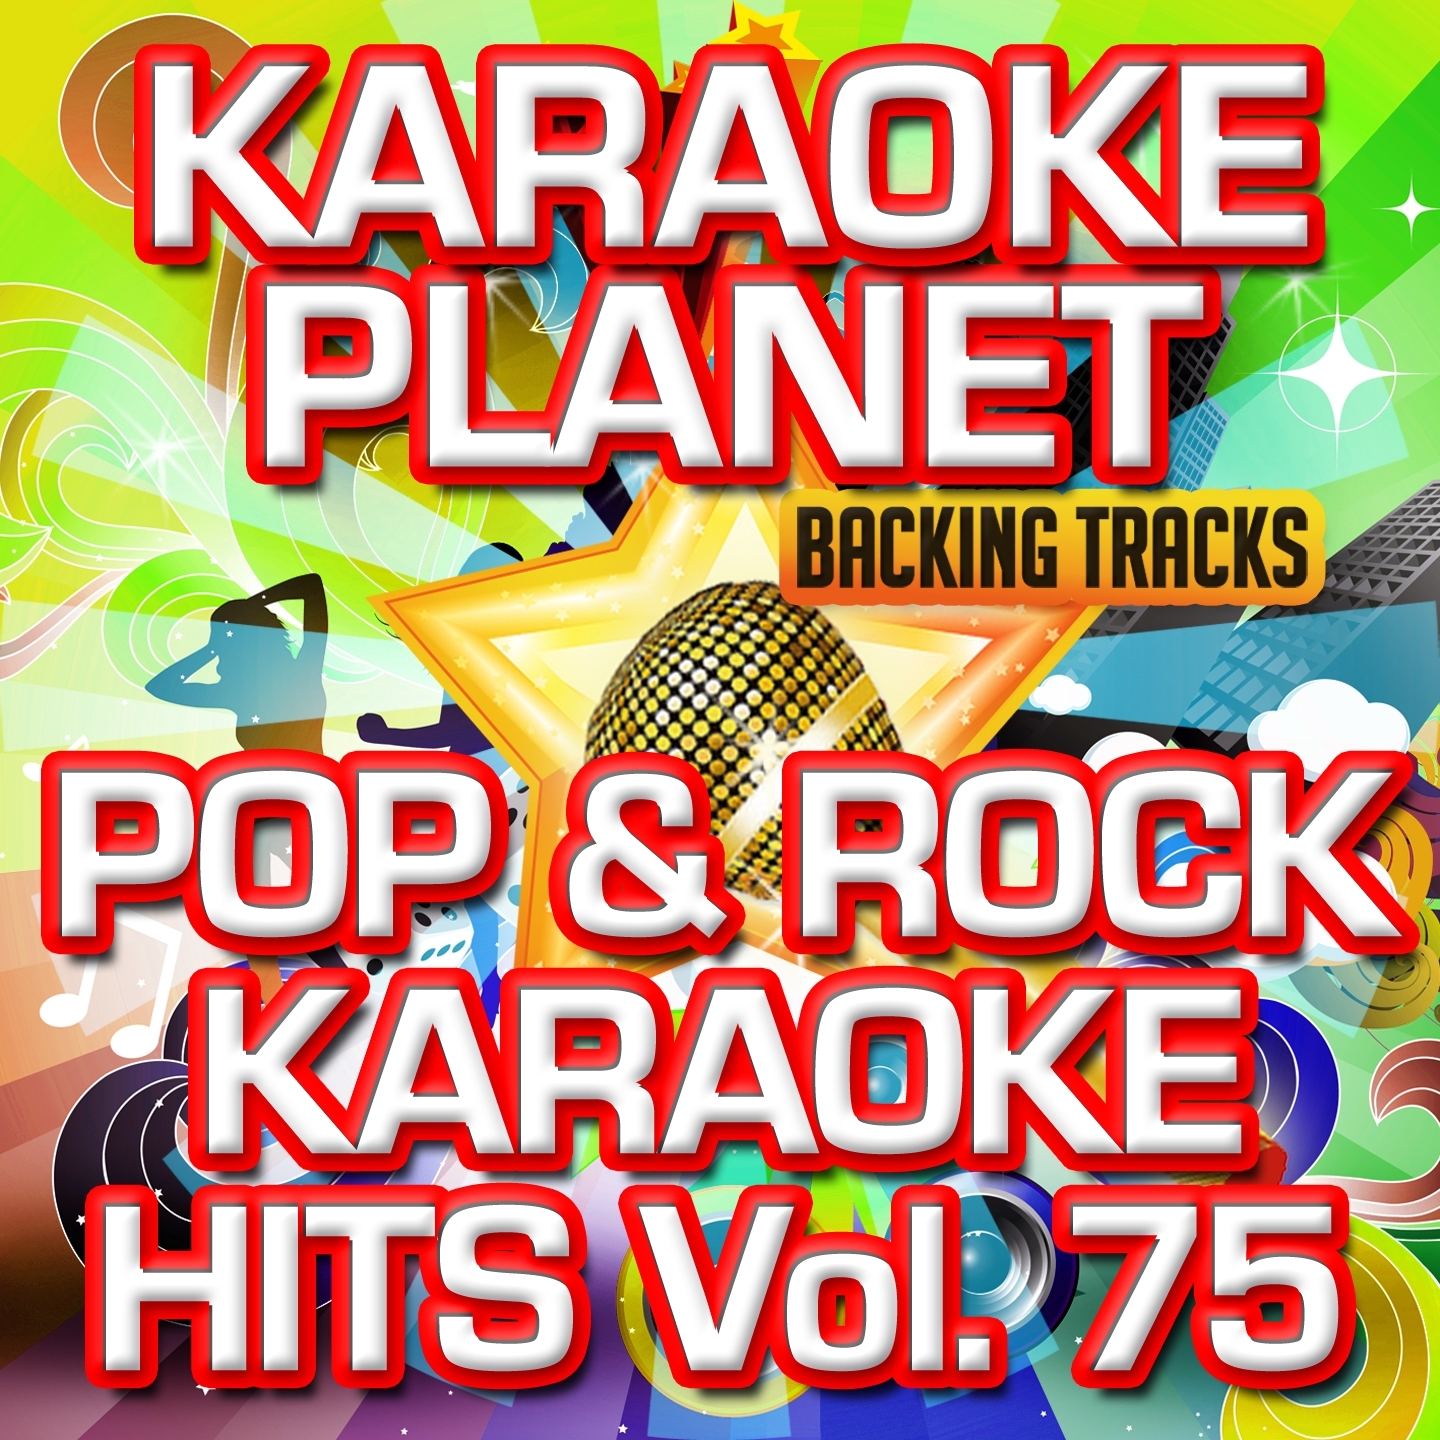 Pop & Rock Karaoke Hits, Vol. 75